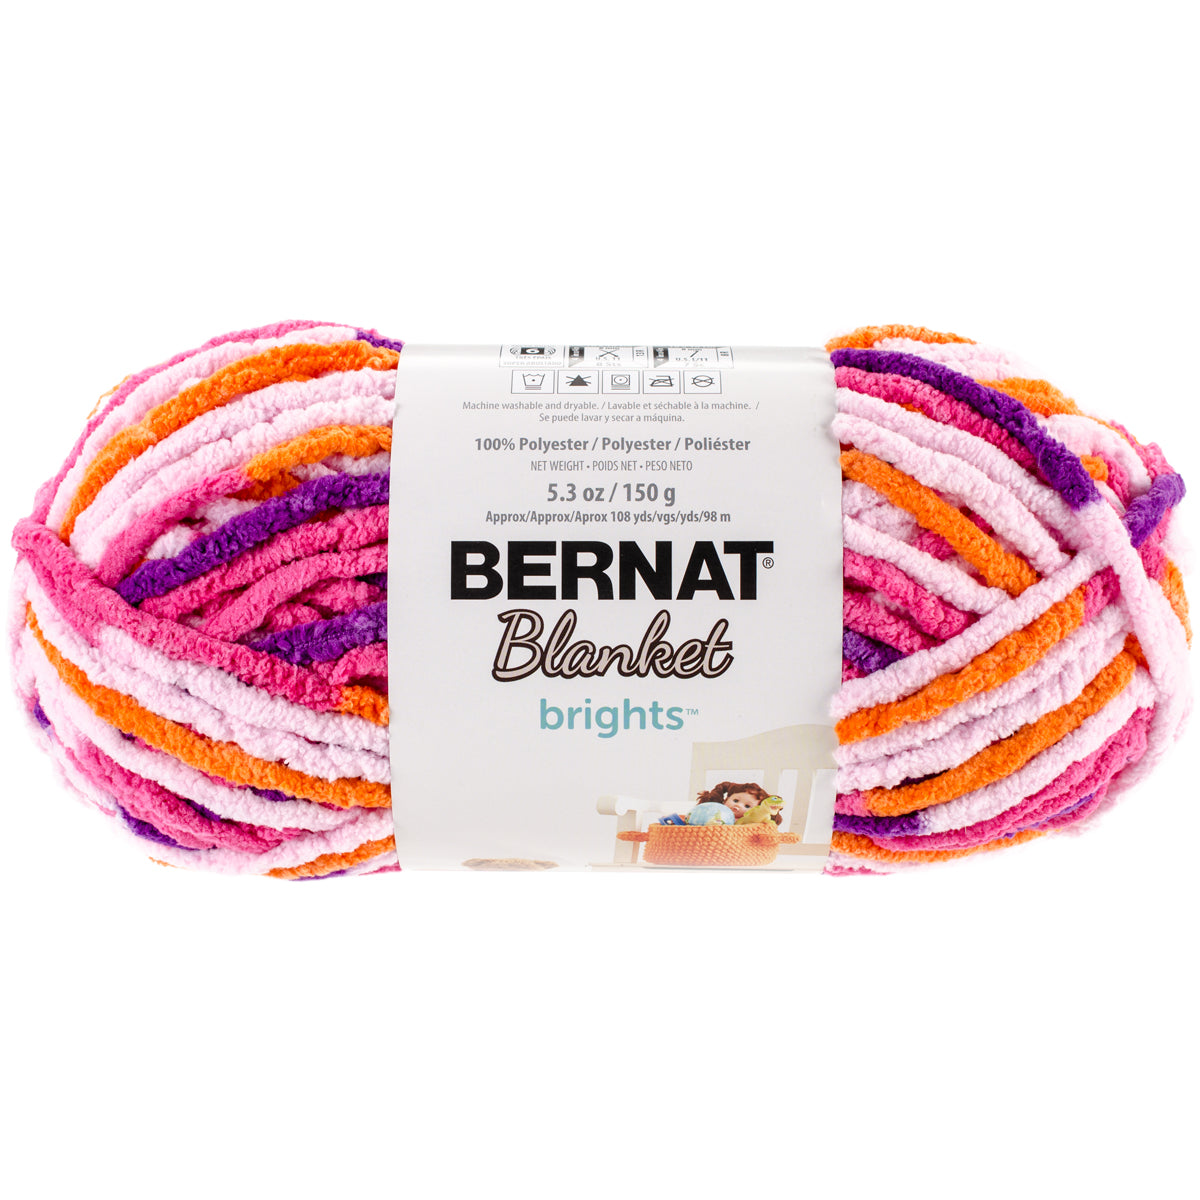 Bernat Blanket Brights Waterslide Varg Yarn - 2 Pack of 300g/10.5oz -  Polyester - 6 Super Bulky - 220 Yards - Knitting/Crochet